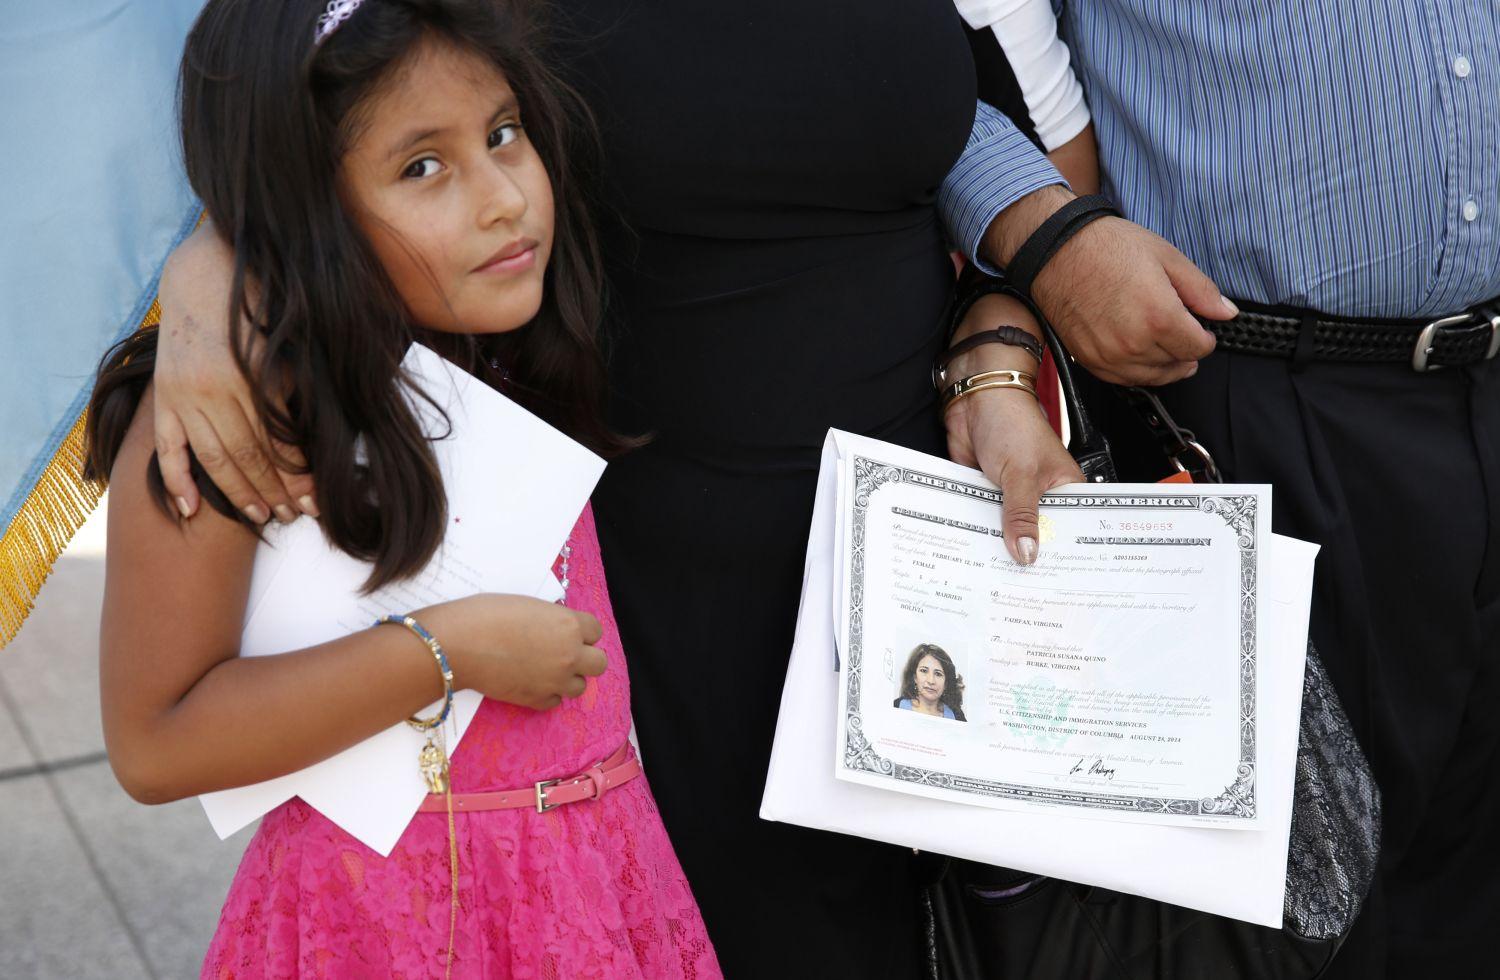 A nyolcéves Alexia Quino az édesanyjával egy állampolgársági eskütételi ünnepségen. De mi van a spanyol ajkú közösséggel? – feszegetik sokan